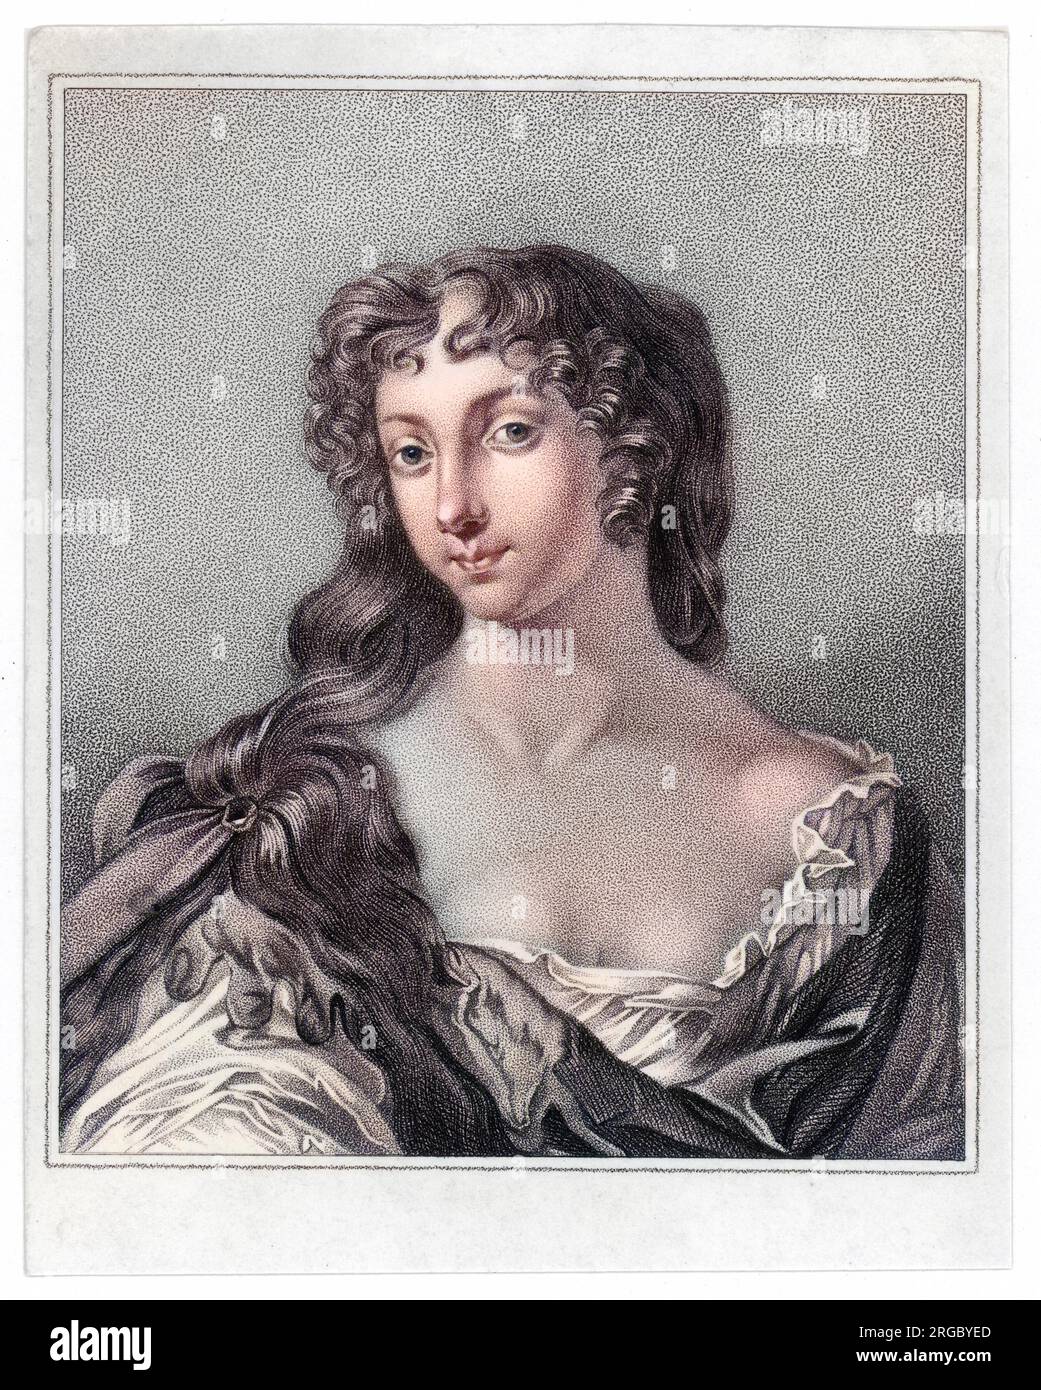 Eleanor 'Nell' Gwyn (oder Gwynn oder Gwynne) (1650 - 1687), englische Schauspielerin, Geliebte von König Karl II Stockfoto